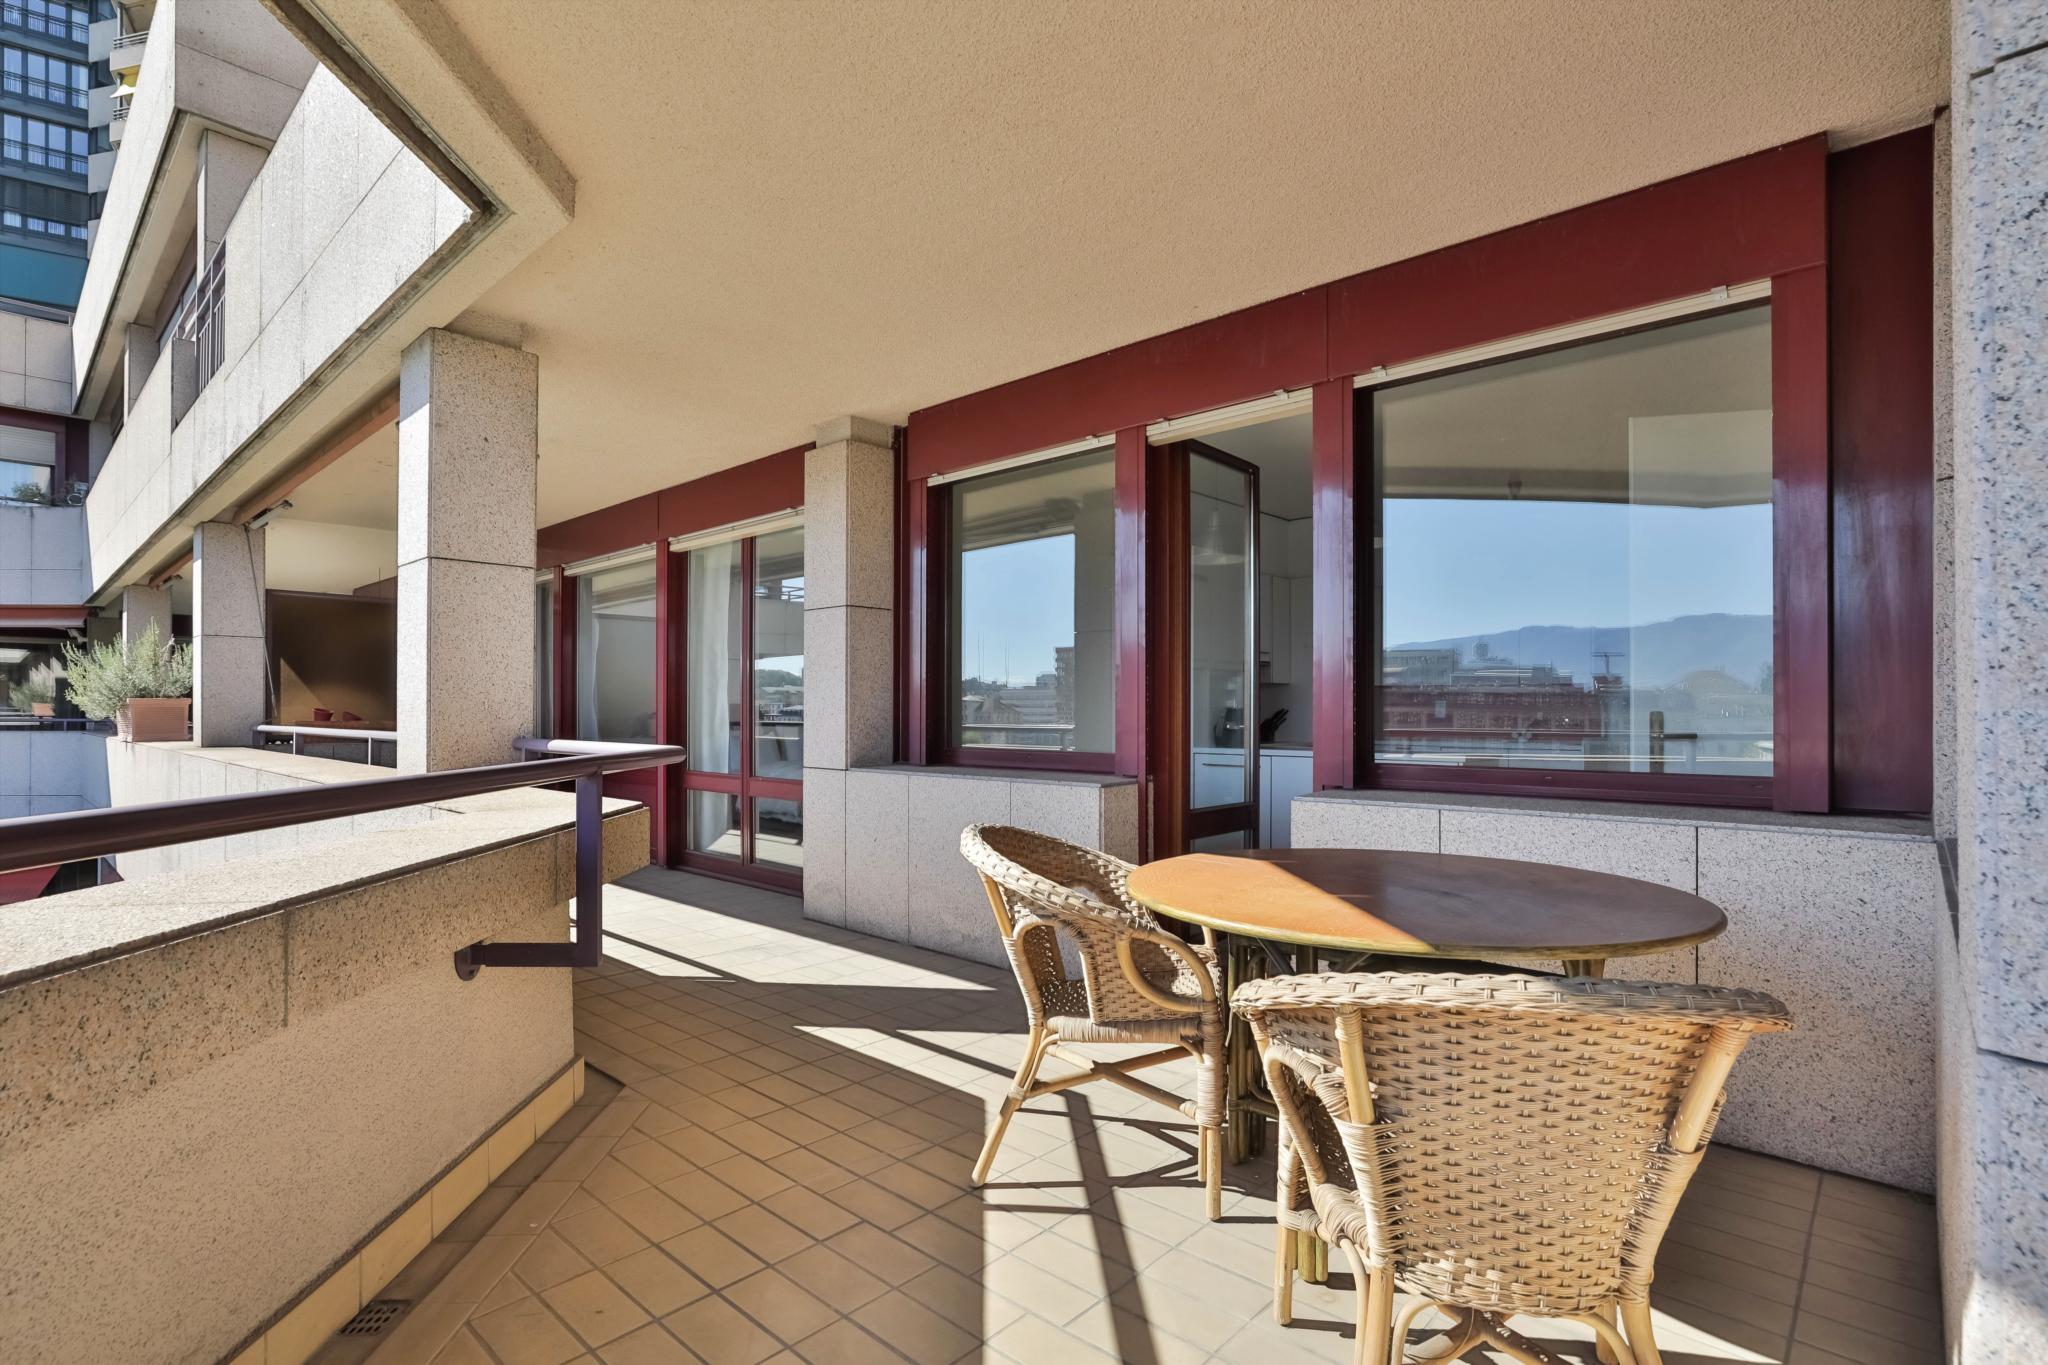 À vendre magnifique appartement avec vue imprenable sur le Rhône.